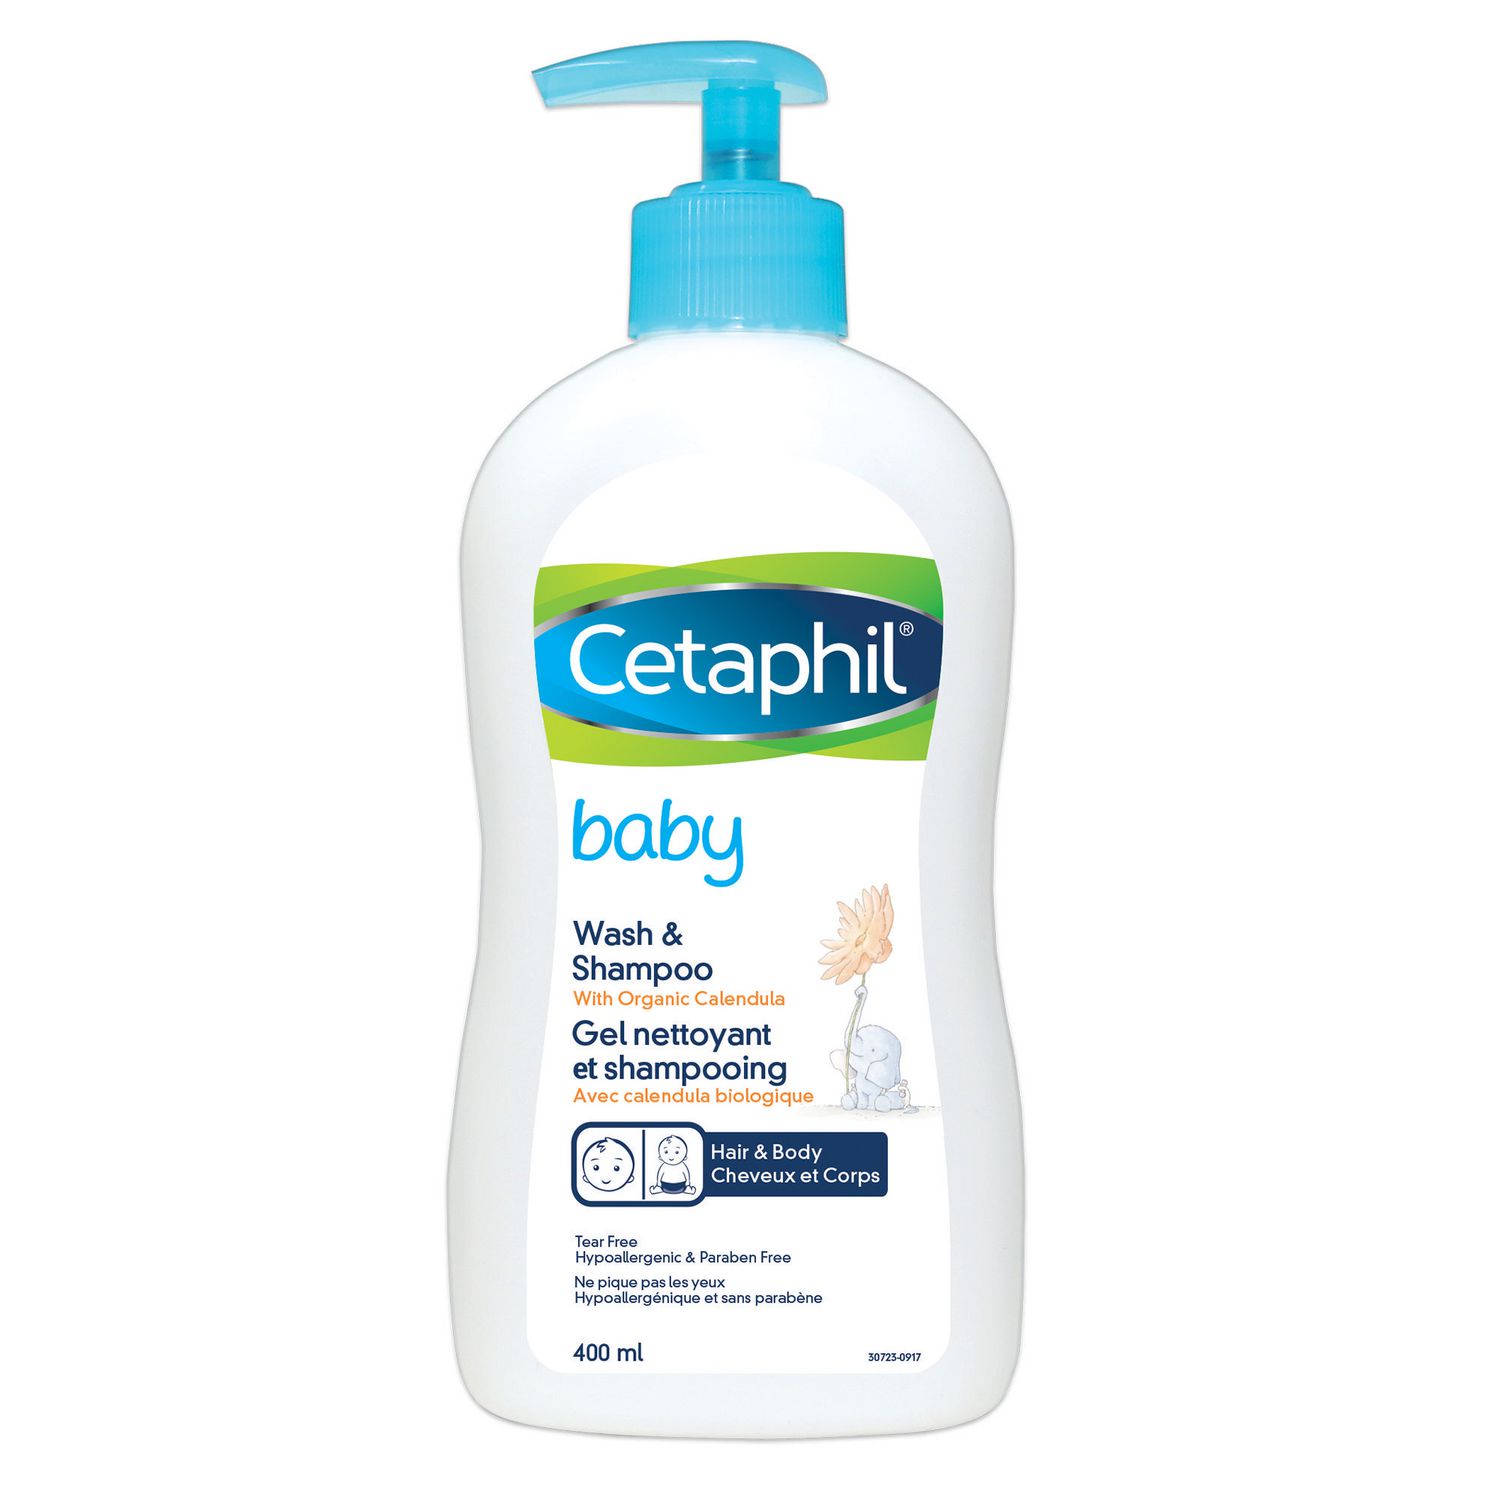 cetaphil wash and shampoo